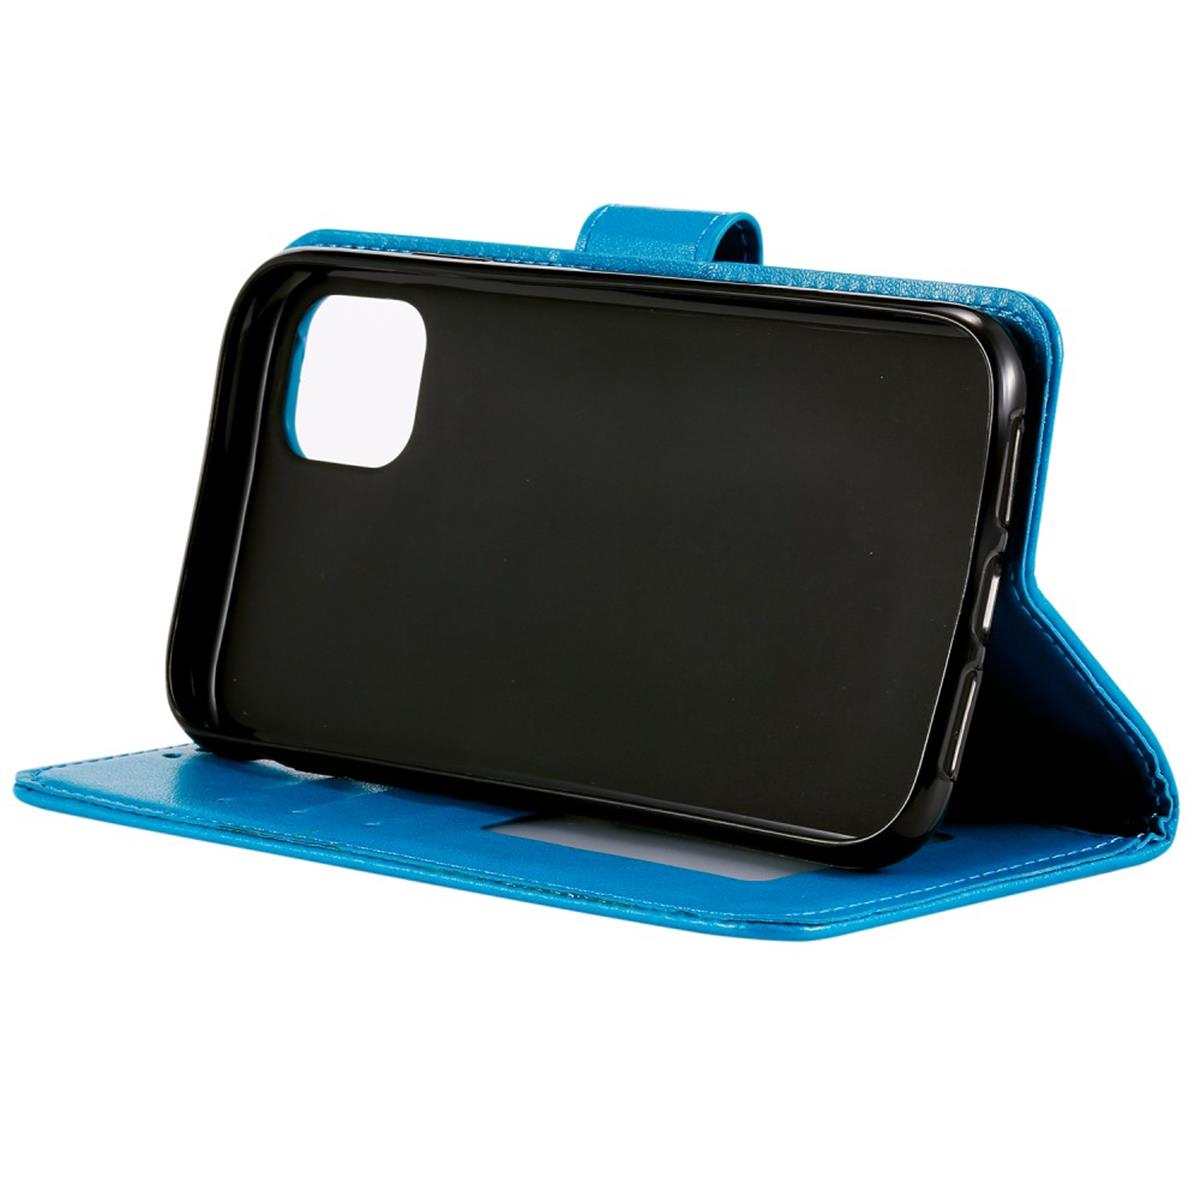 Hülle für Apple iPhone 11 Pro [5,8 Zoll] Handyhülle Flip Case Etui Mandala Blau